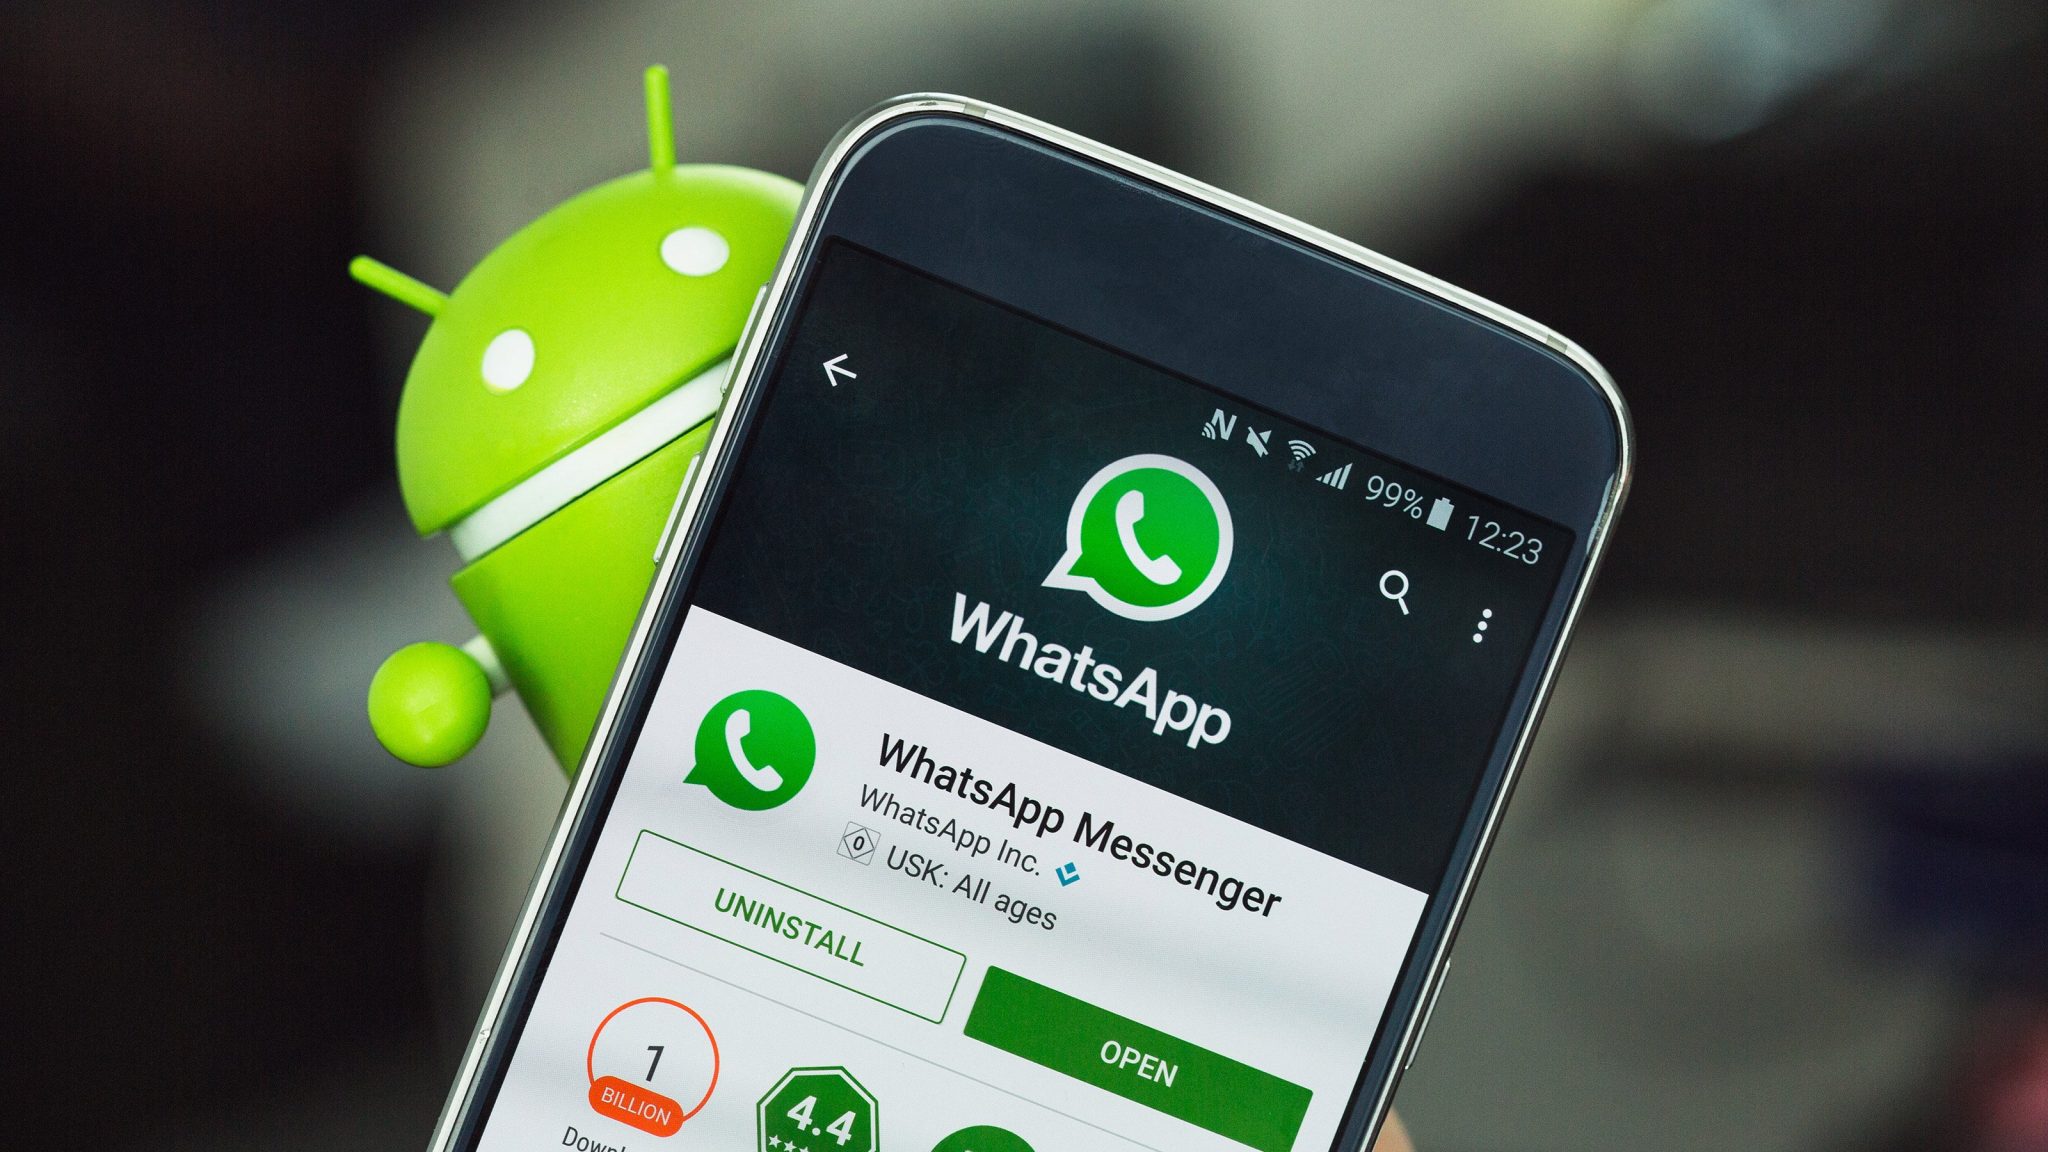 WhatsApp Update Version 2.16.264